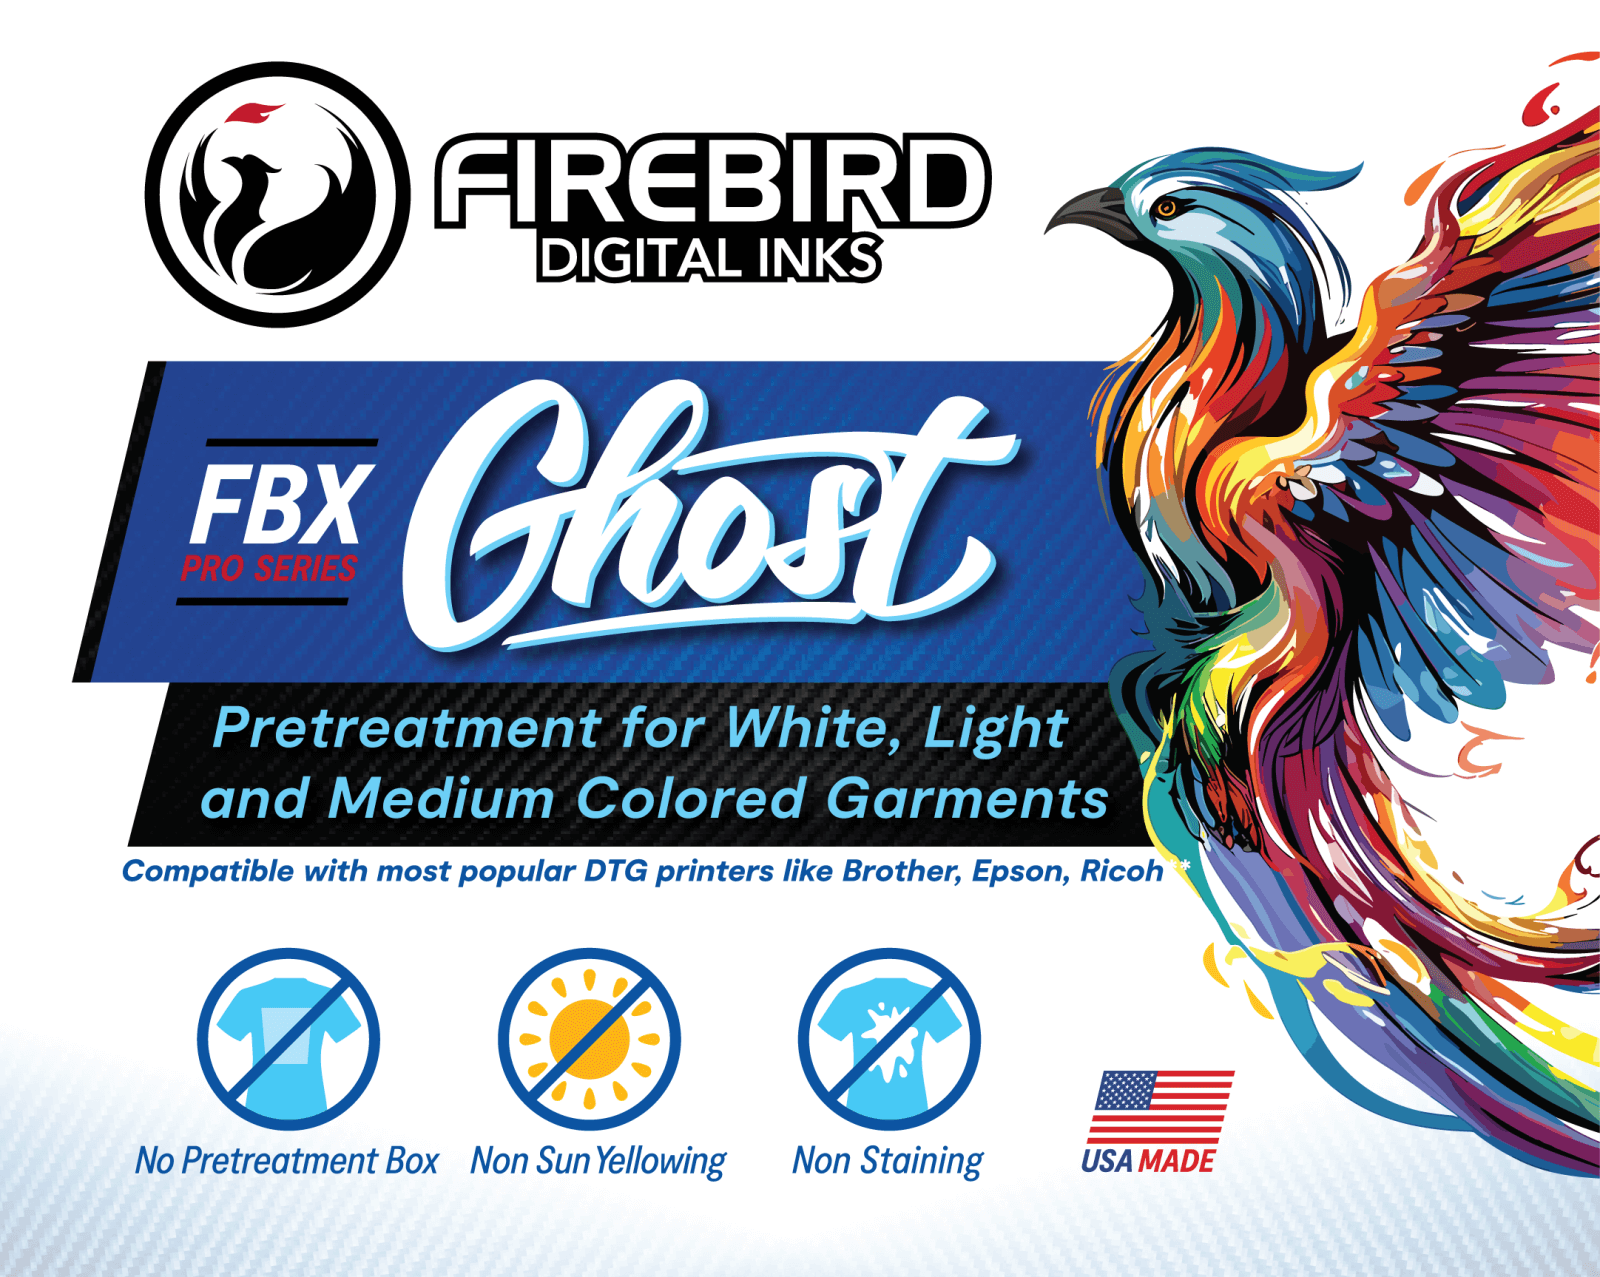 Fbx ghost dtg pretreatment front label